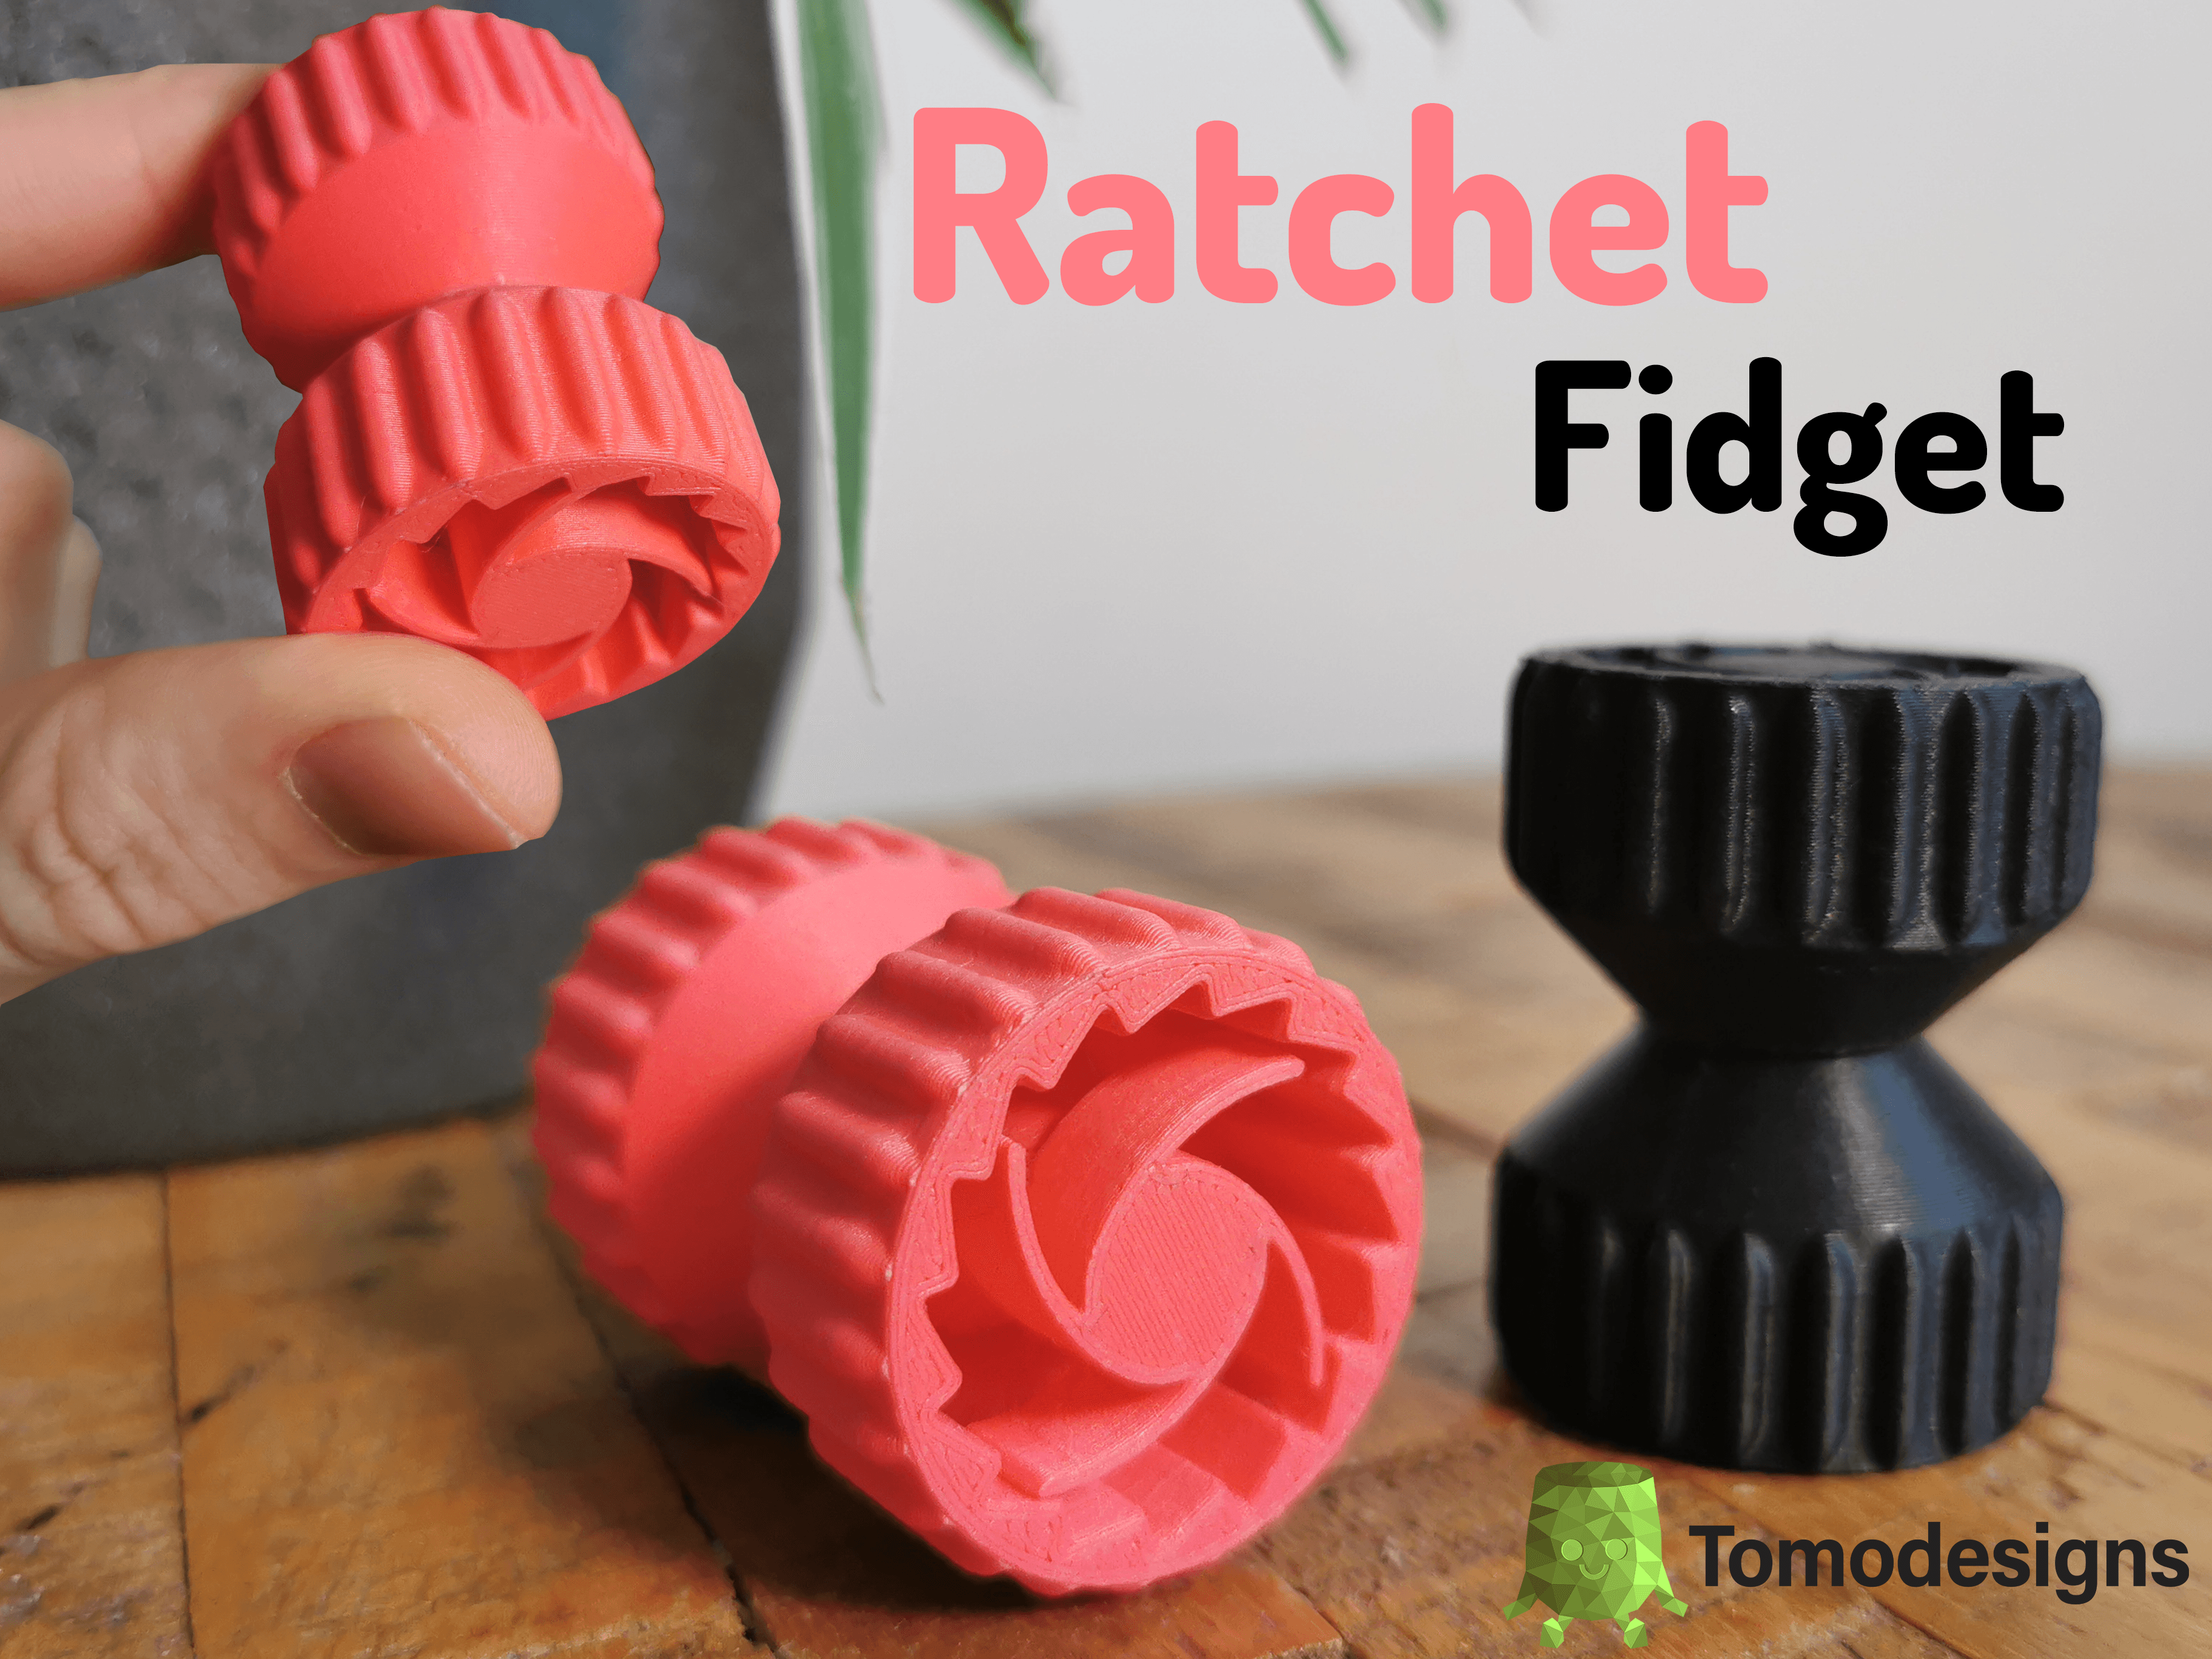 Ratchet Fidget.stl 3d model